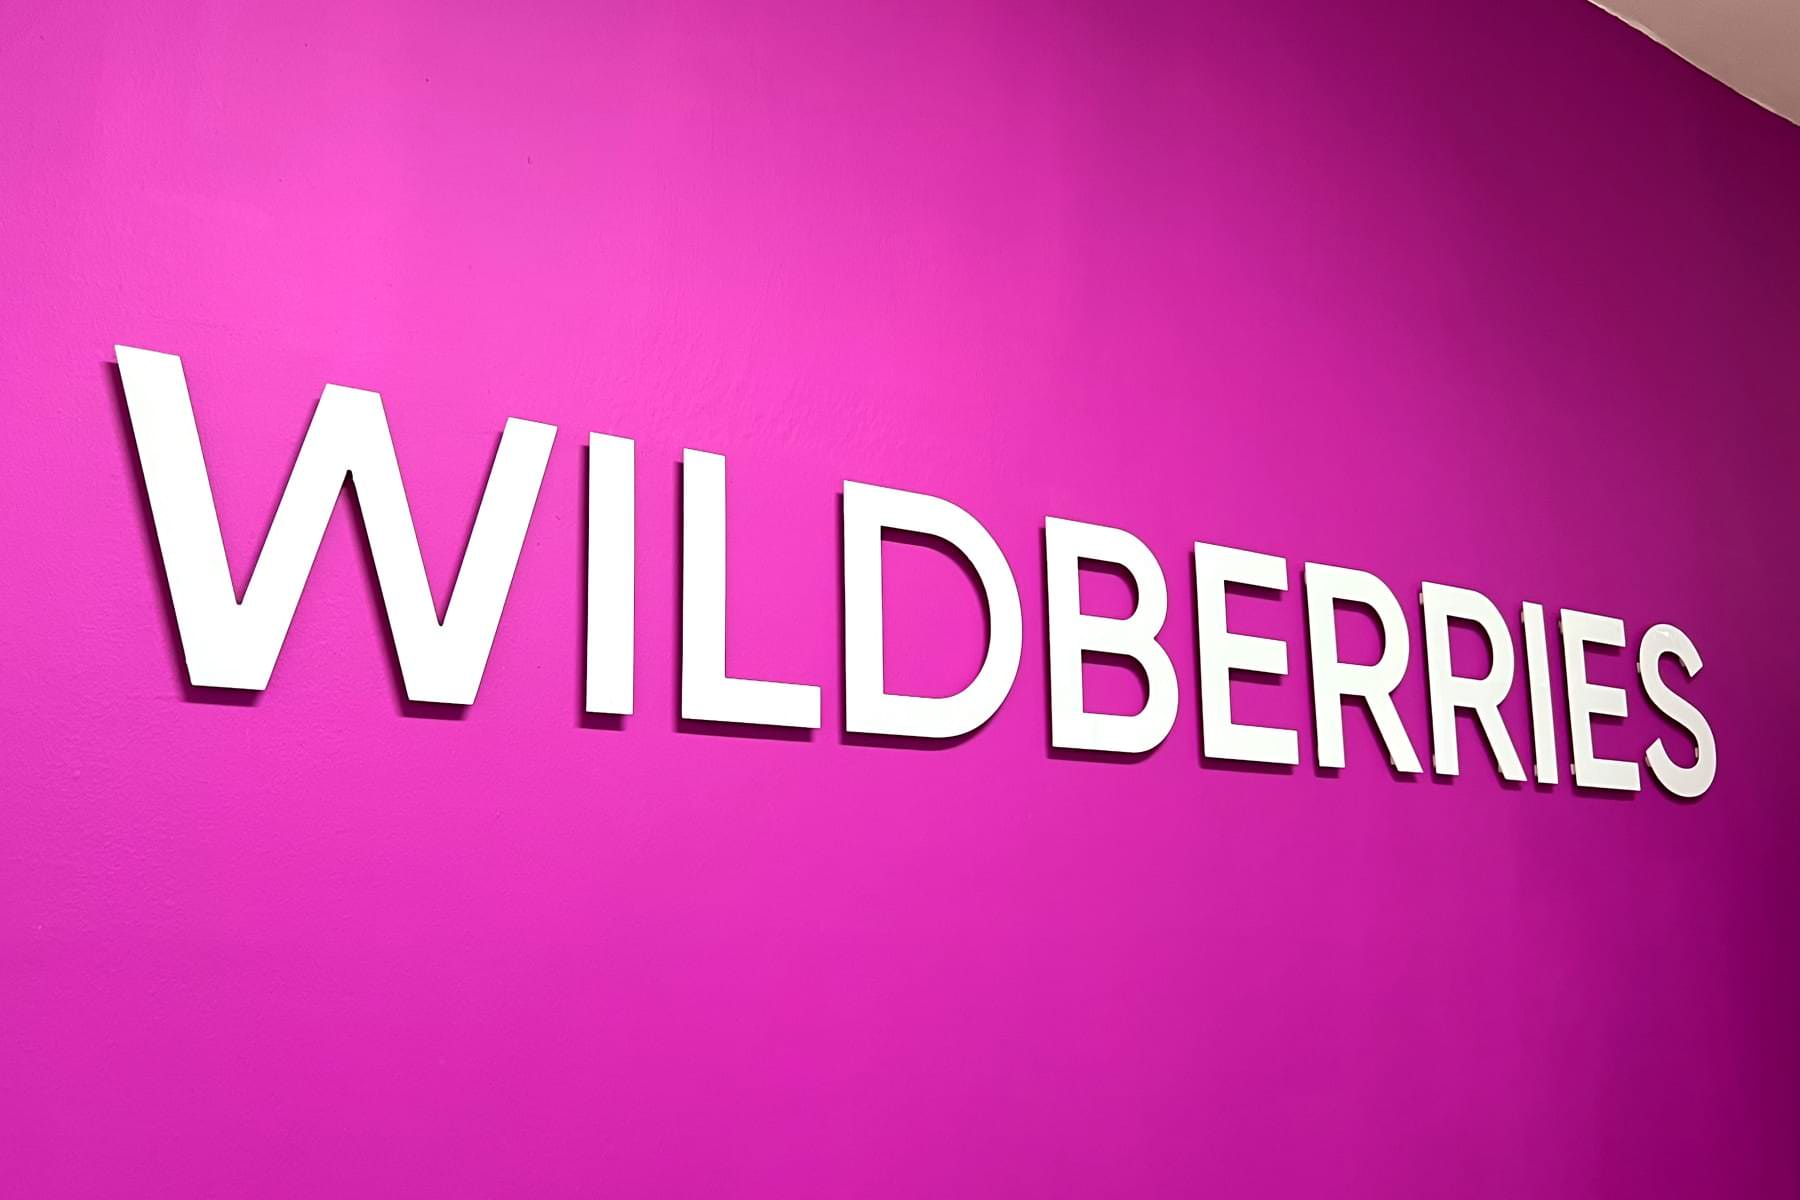 Wildberries ввел новые правила возврата товаров для всех покупателей